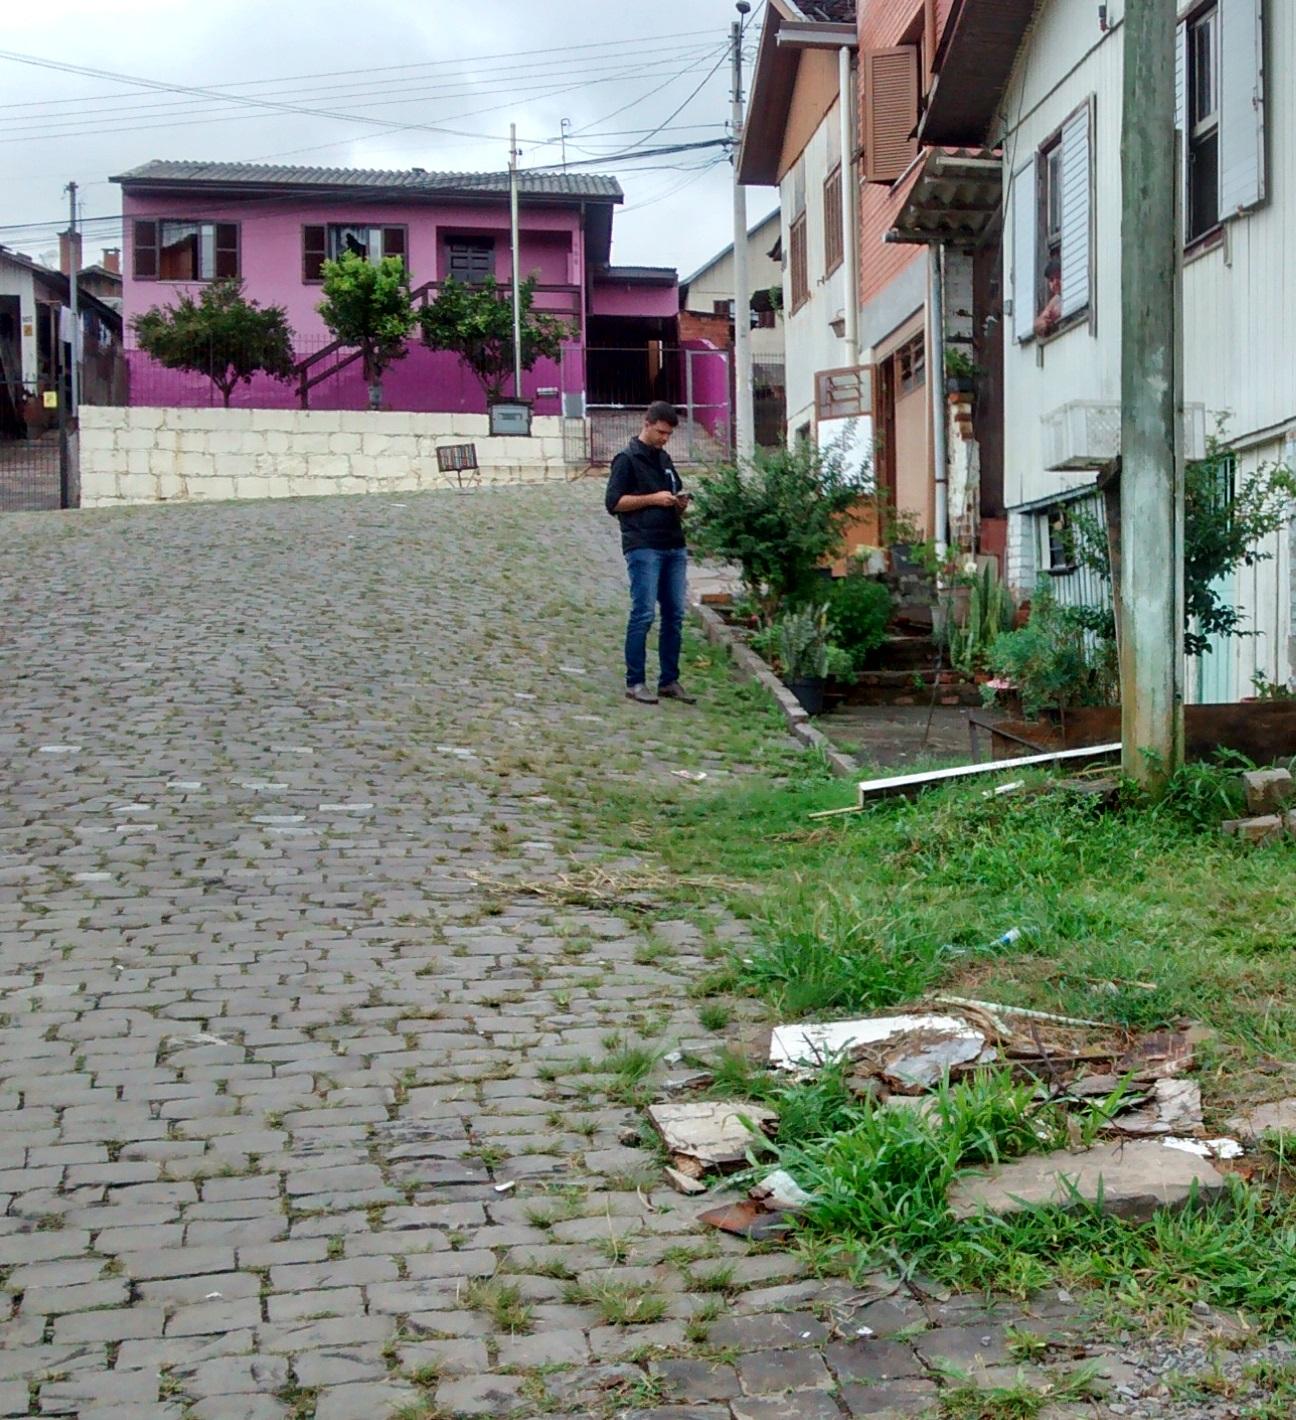 Vereador Neri, O Carteiro atende a demandas no bairro Cruzeiro